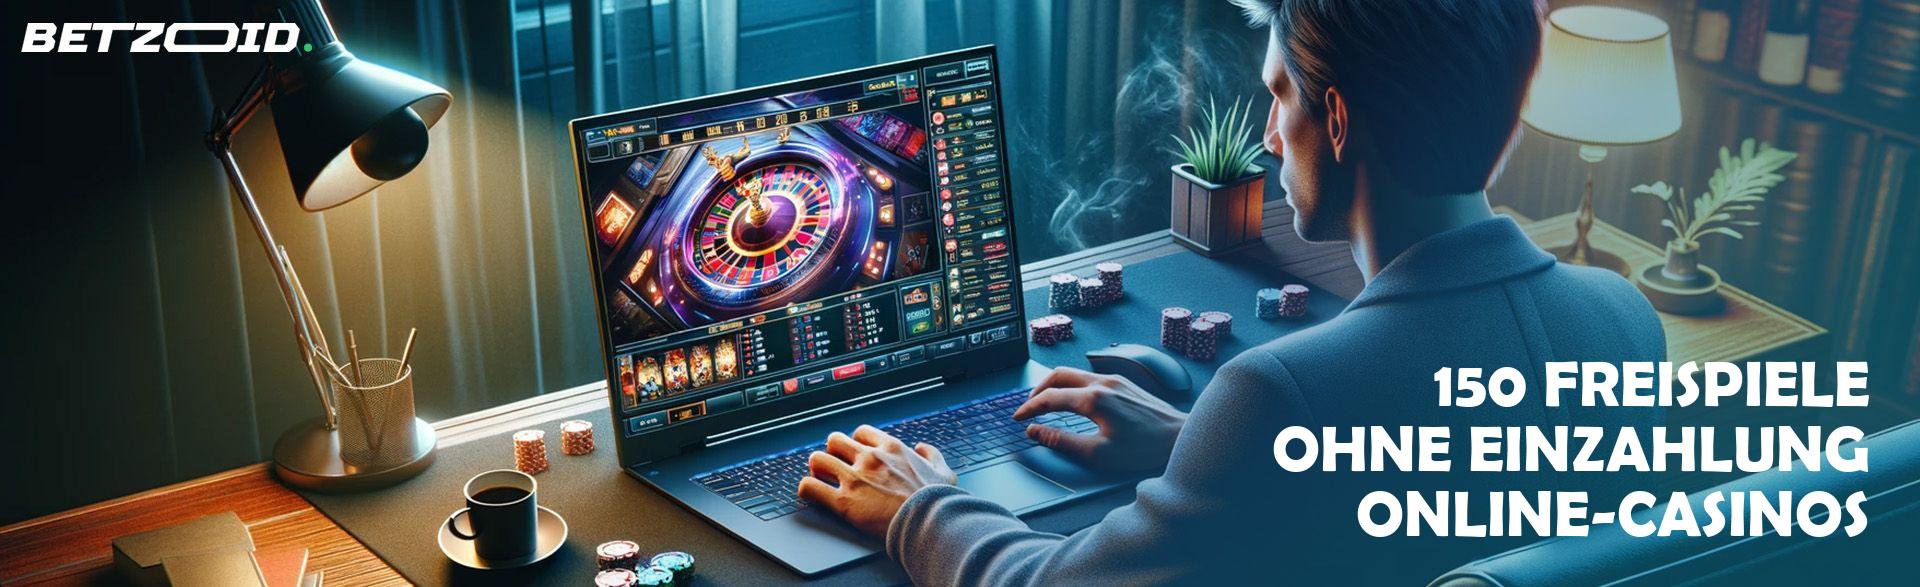 150 Freispiele ohne Einzahlung Online-Casinos.